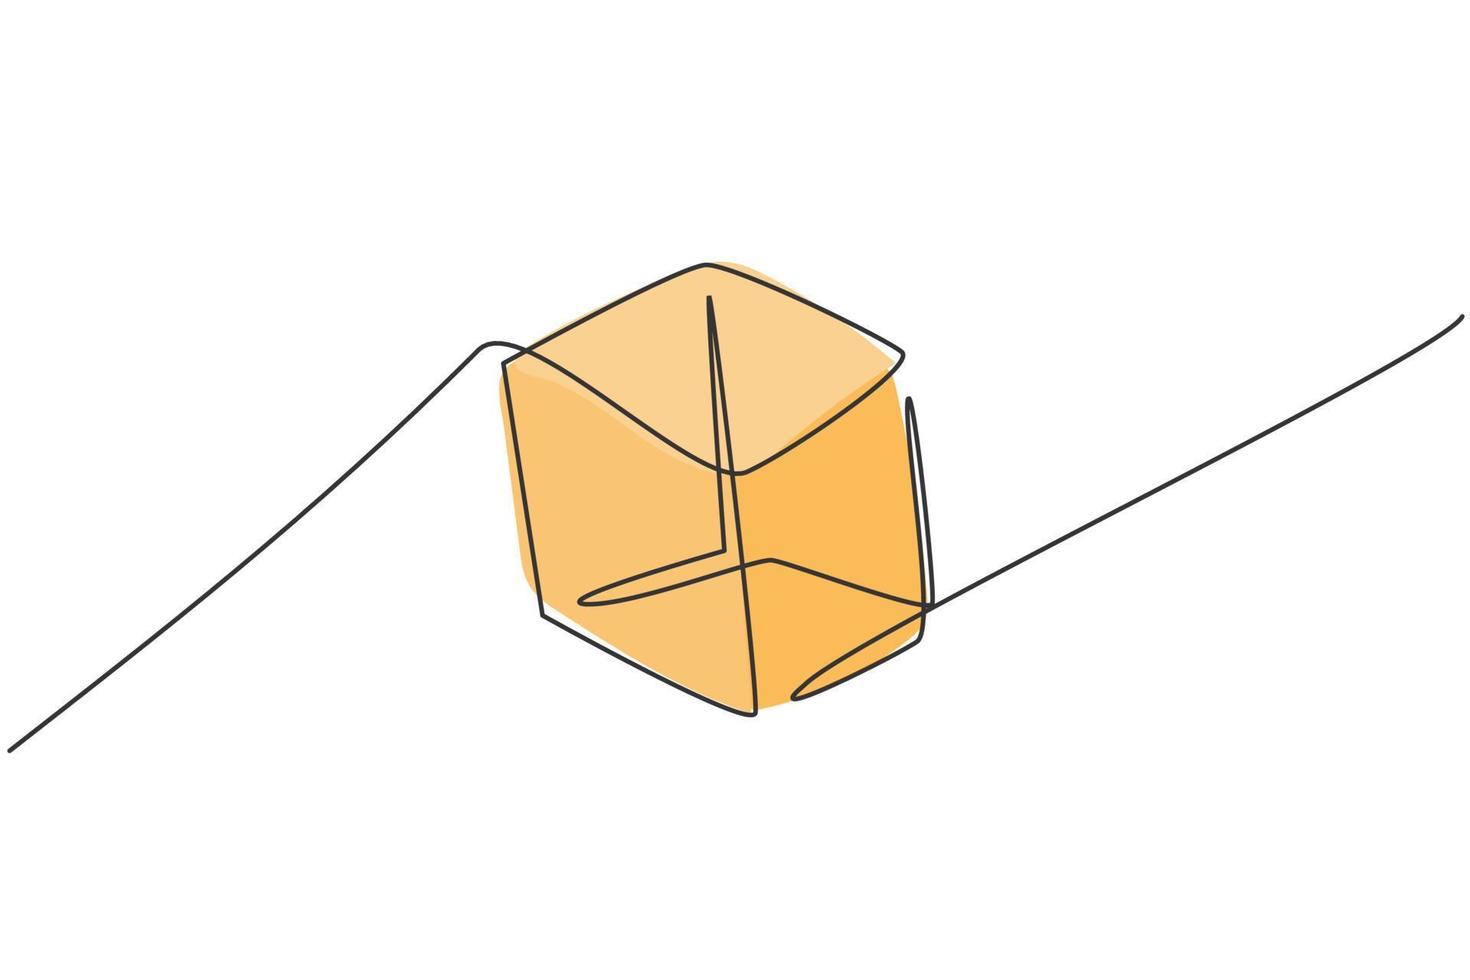 disegno a linea singola della forma geometrica del cubo. torna a scuola minimalista, concetto di educazione. illustrazione vettoriale grafica di disegno di stile di disegno di linea semplice continua